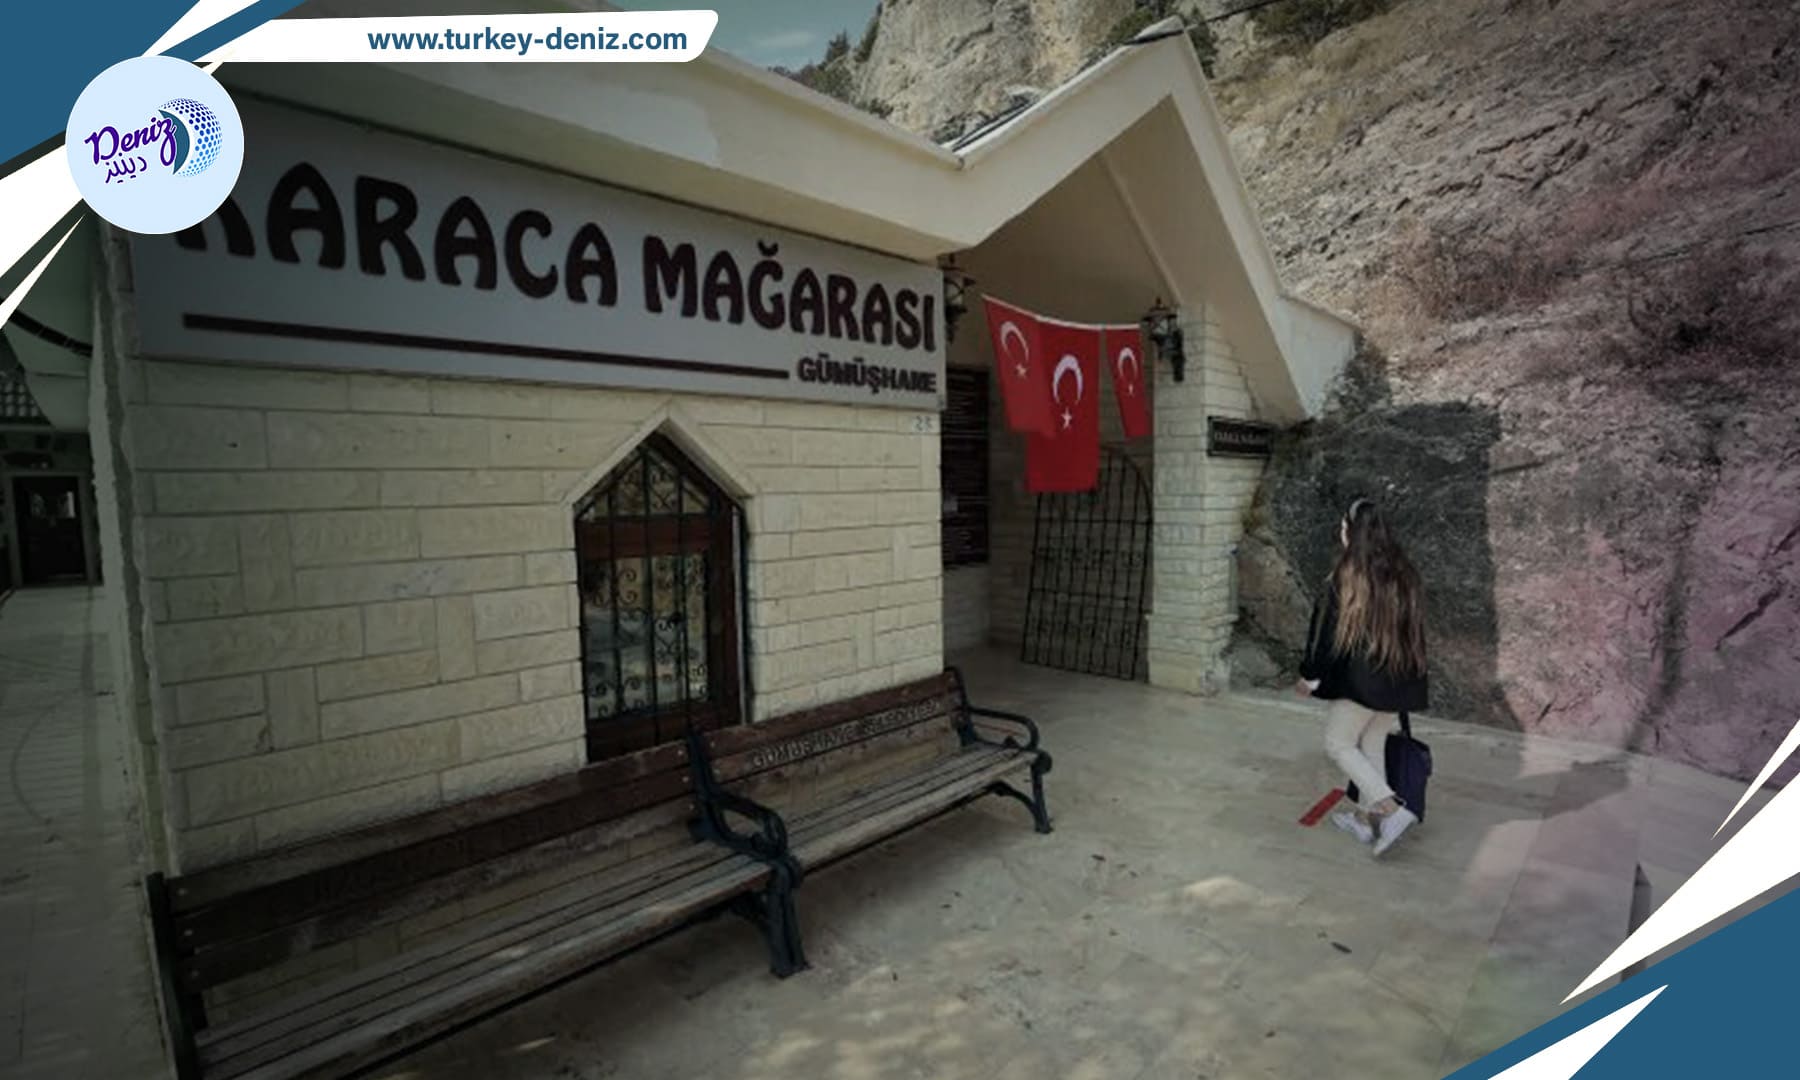 مغارتا "تشال" و"كاراجا" في تركيا .. وجهة سياحية رائعة لمحبي الطبيعة